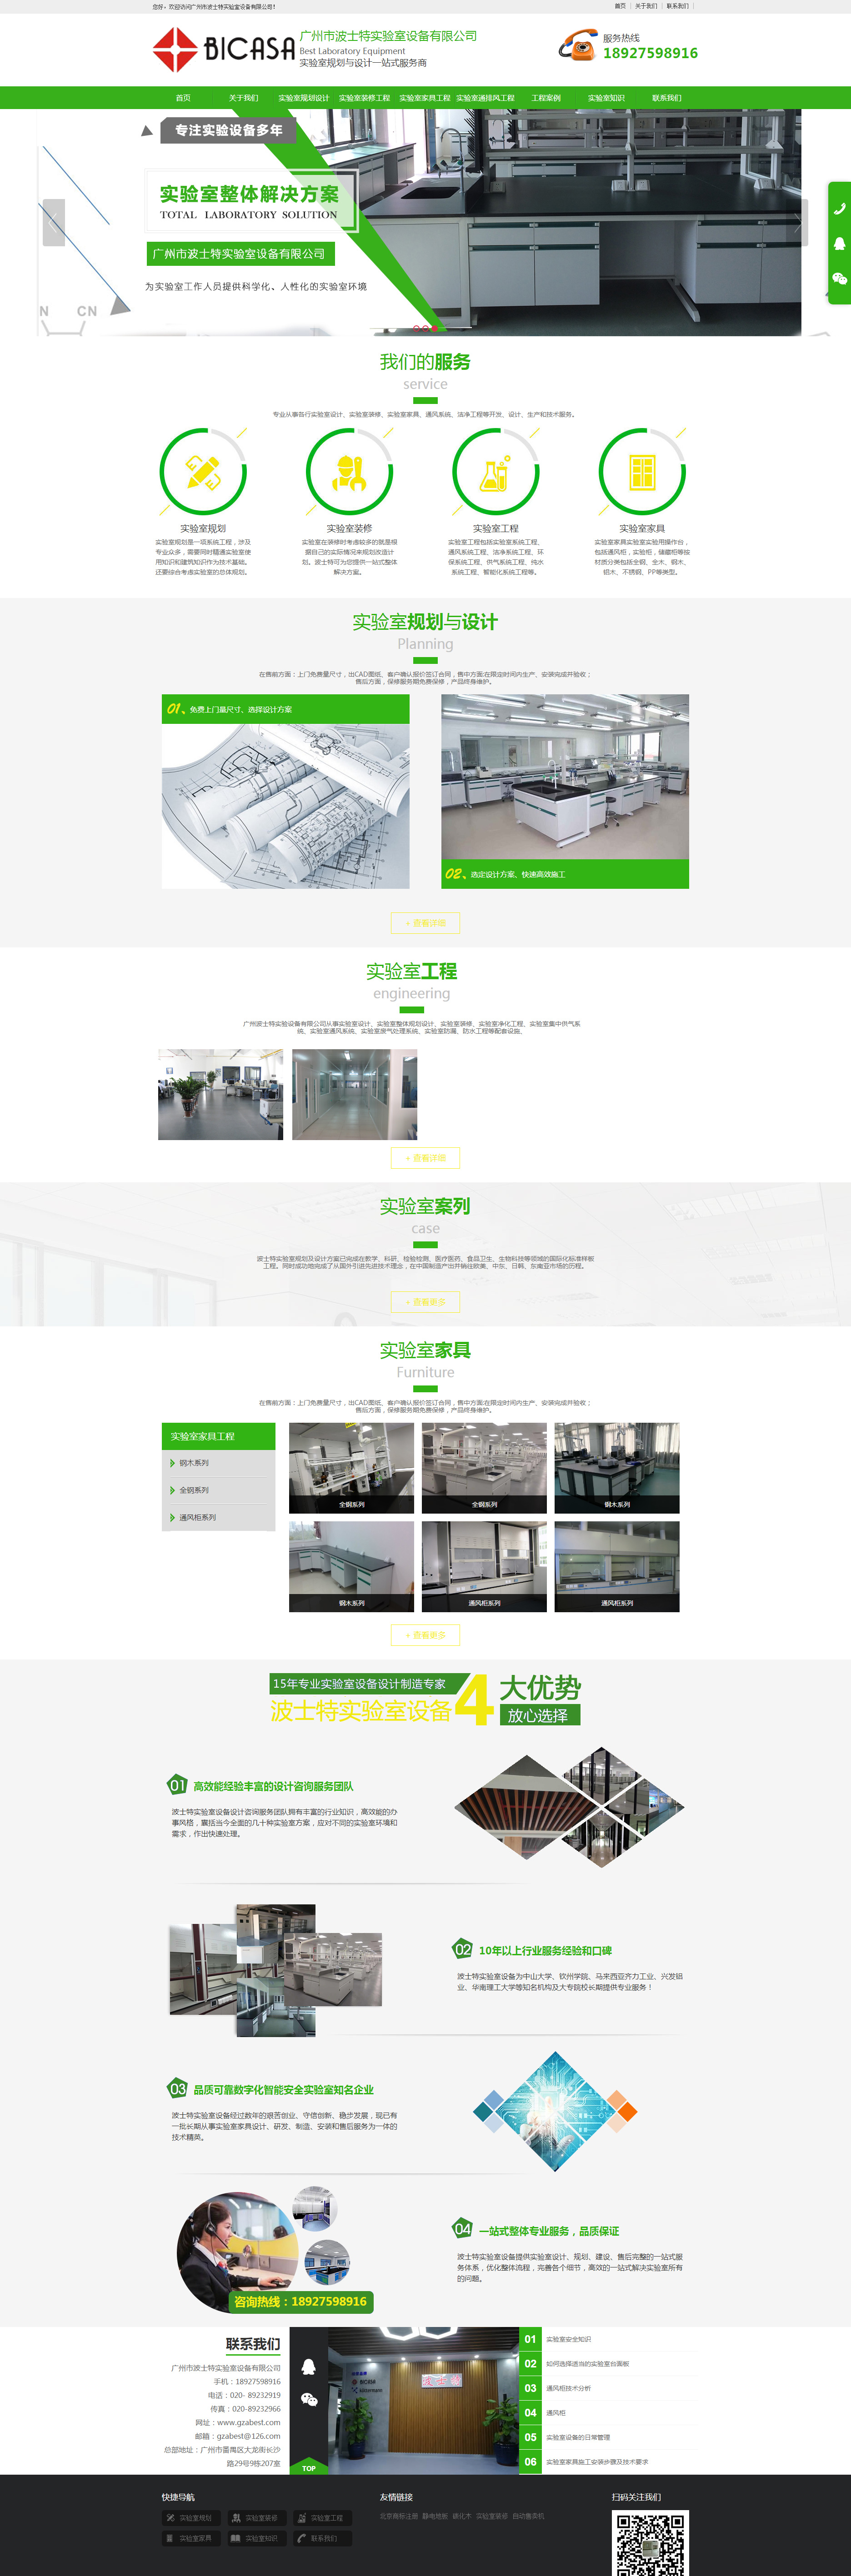 广州波士特实验室设备网站设计效果图